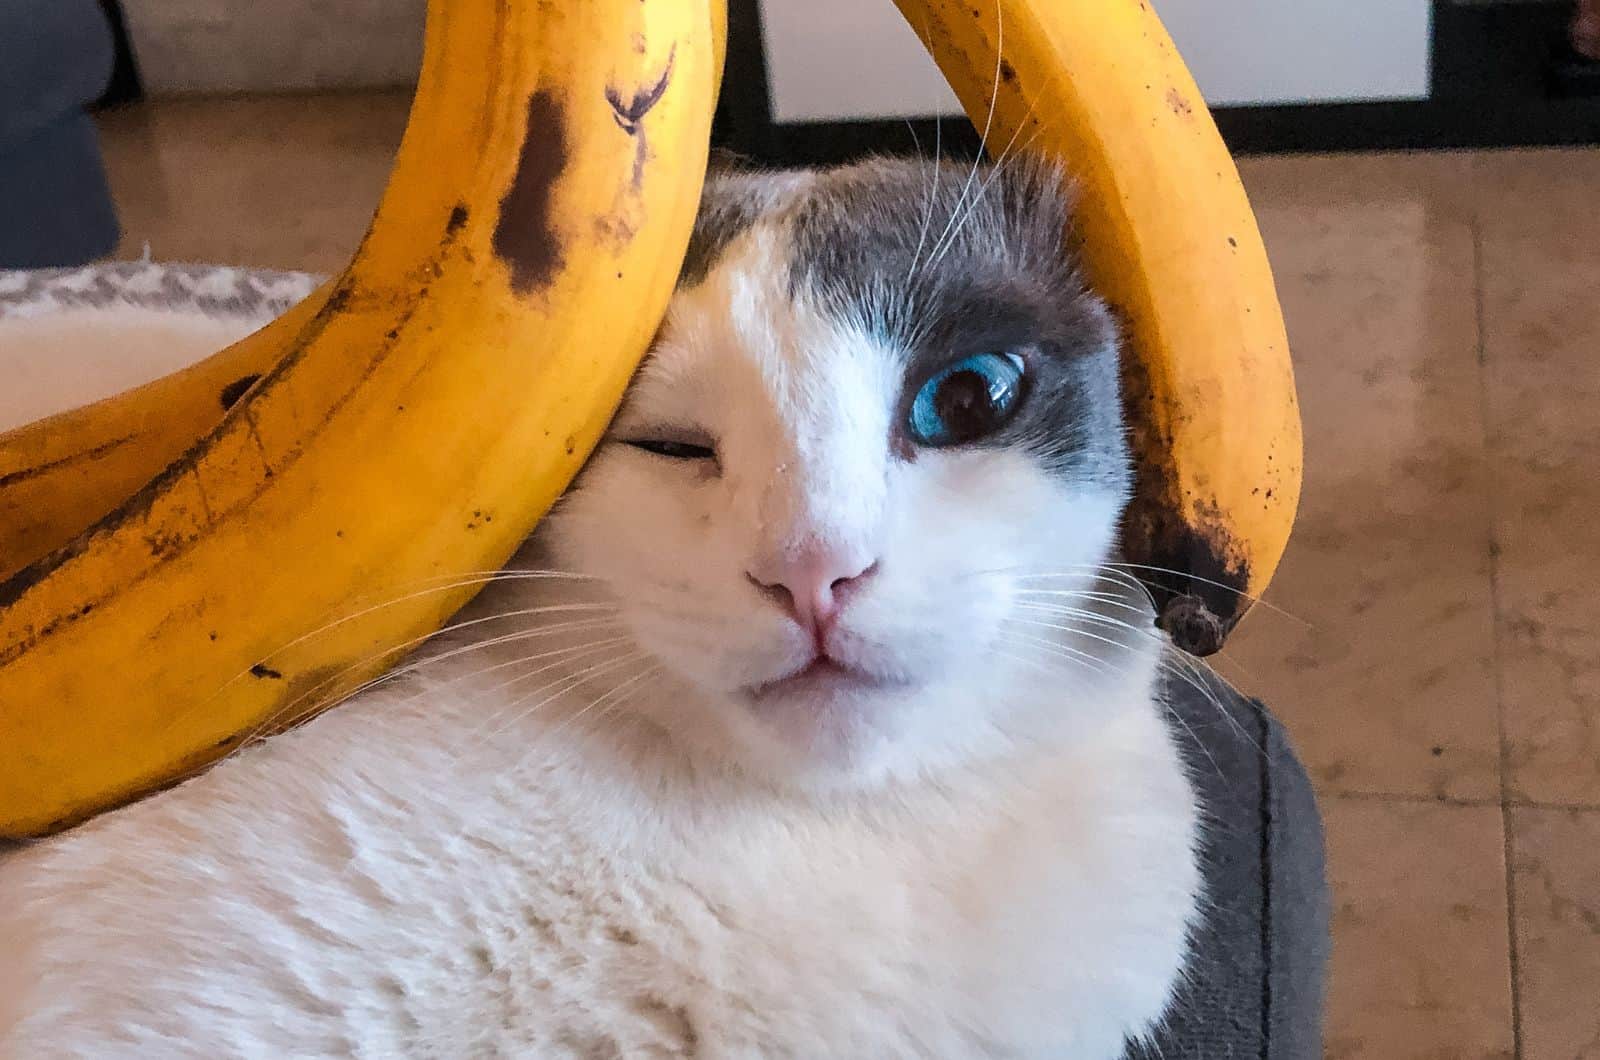 cat's head between two bananas